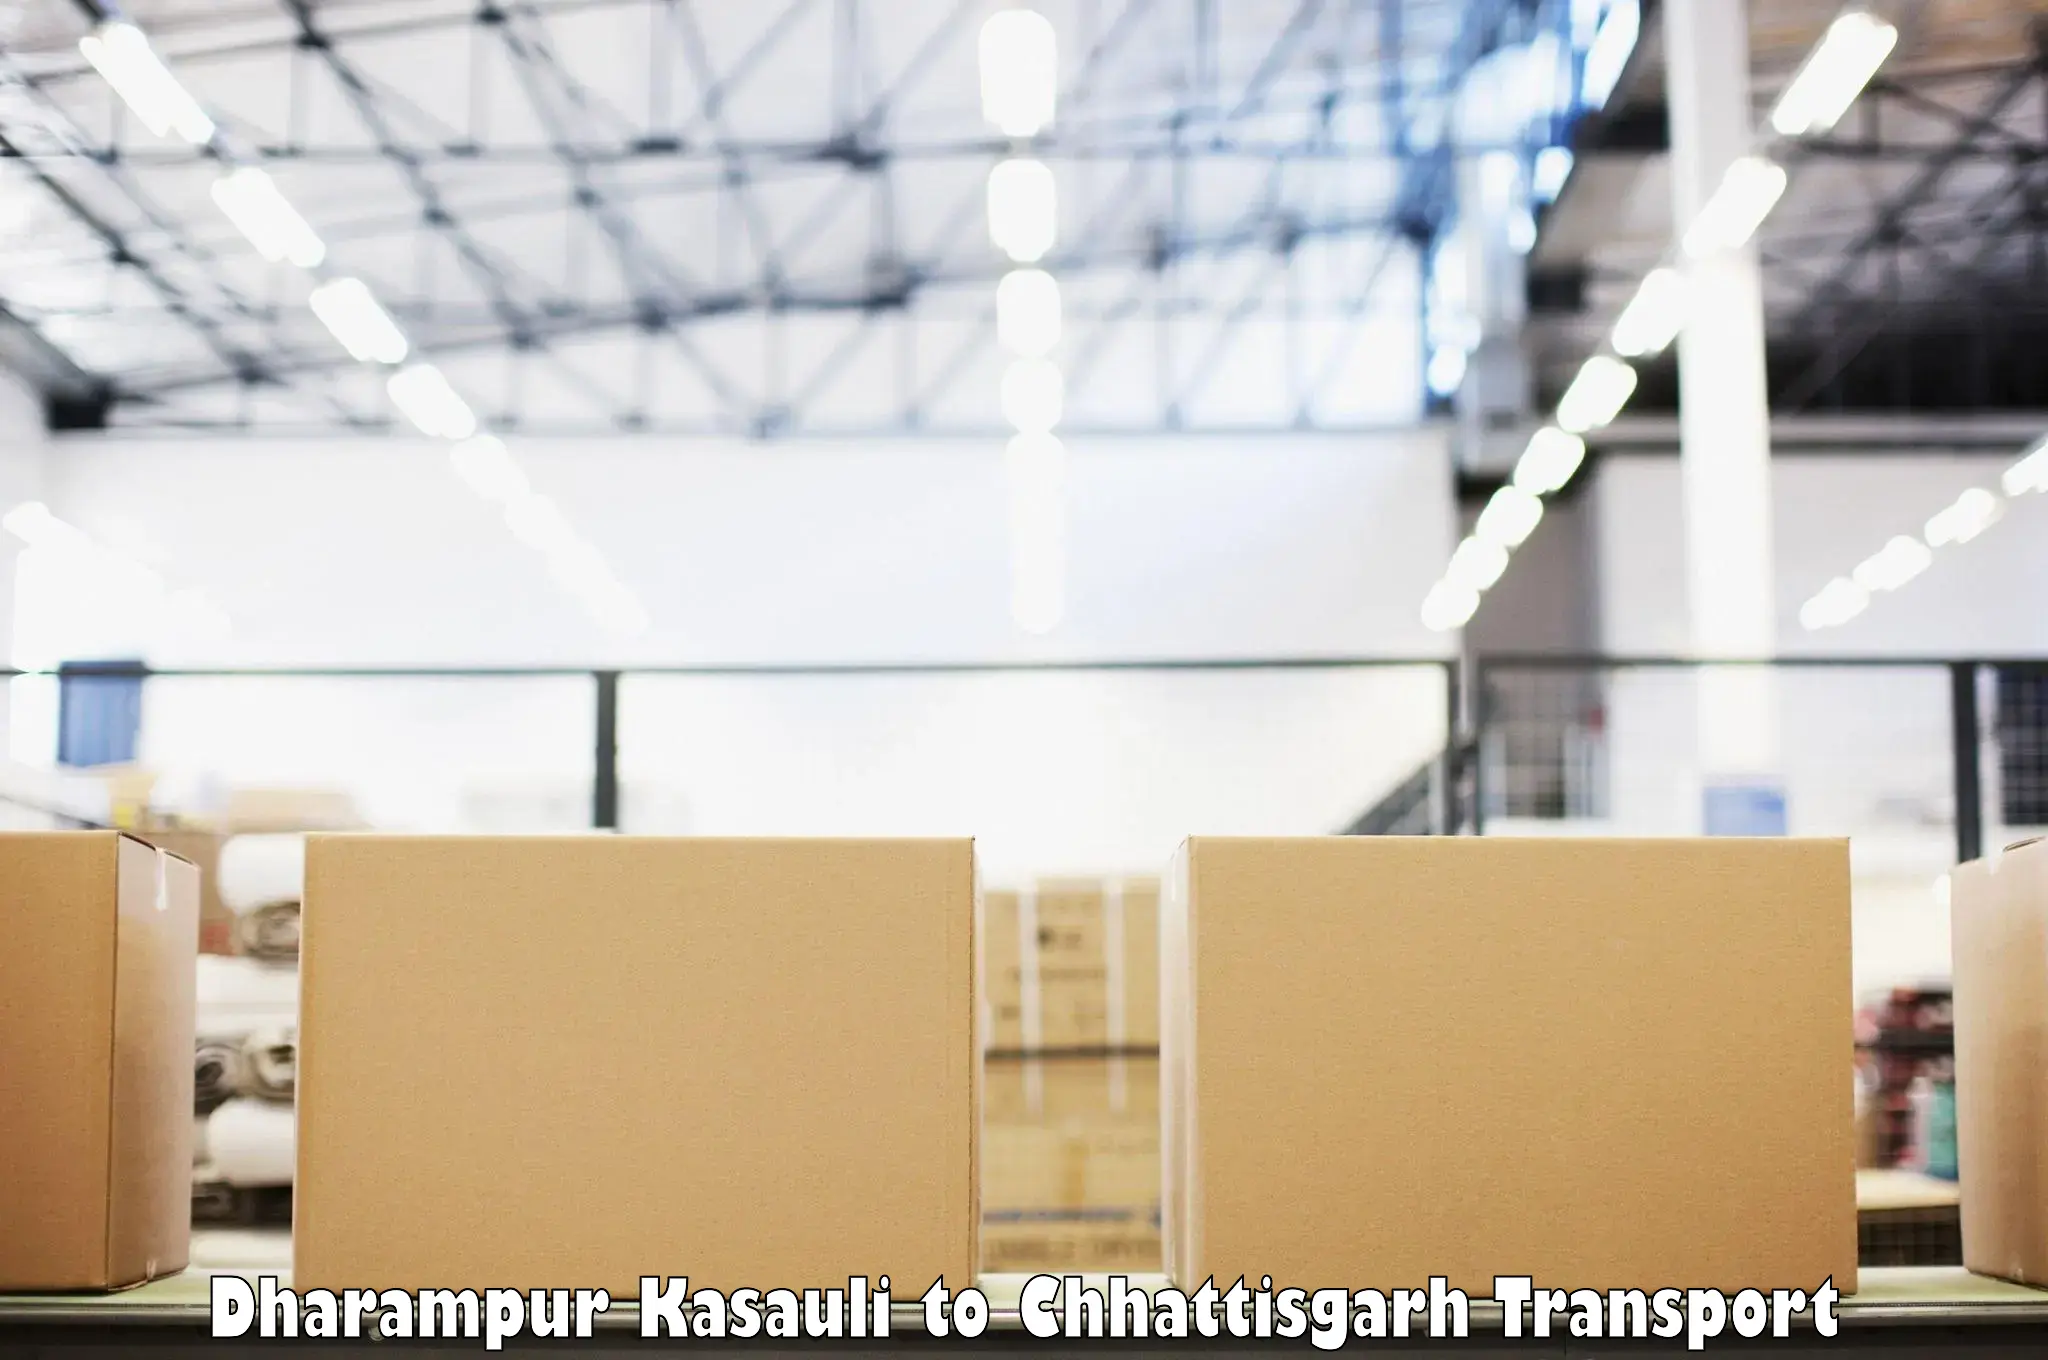 Furniture transport service Dharampur Kasauli to Balod